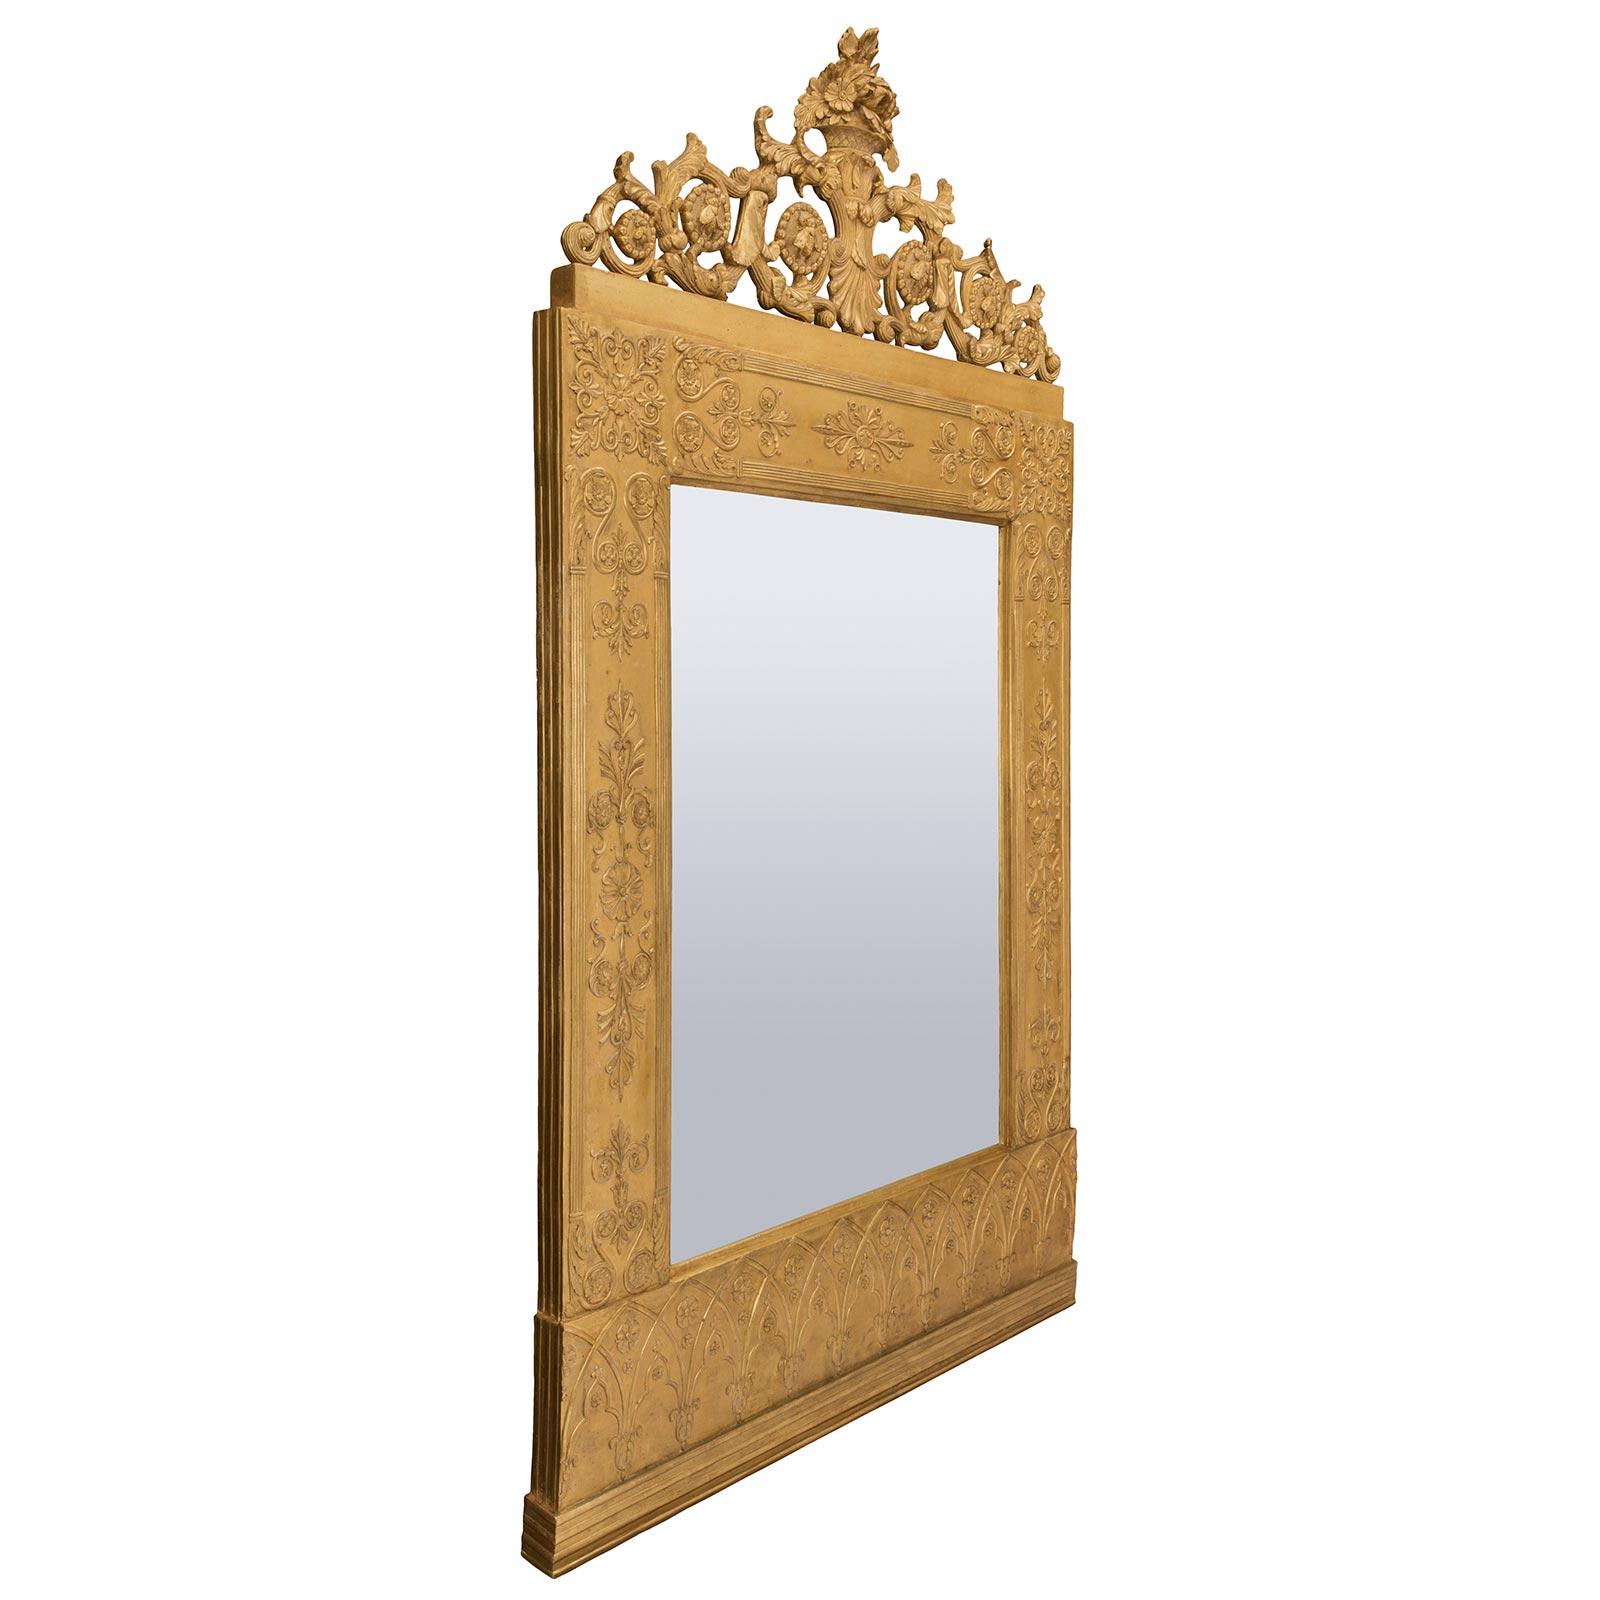 Un sensationnel et très impressionnant miroir en bois doré néoclassique italien du milieu du XVIIIe siècle, en l'honneur de la famille Barberini de Rome, représentant les abeilles symboliques. Le cadre doré présente une base plate tachetée sous un